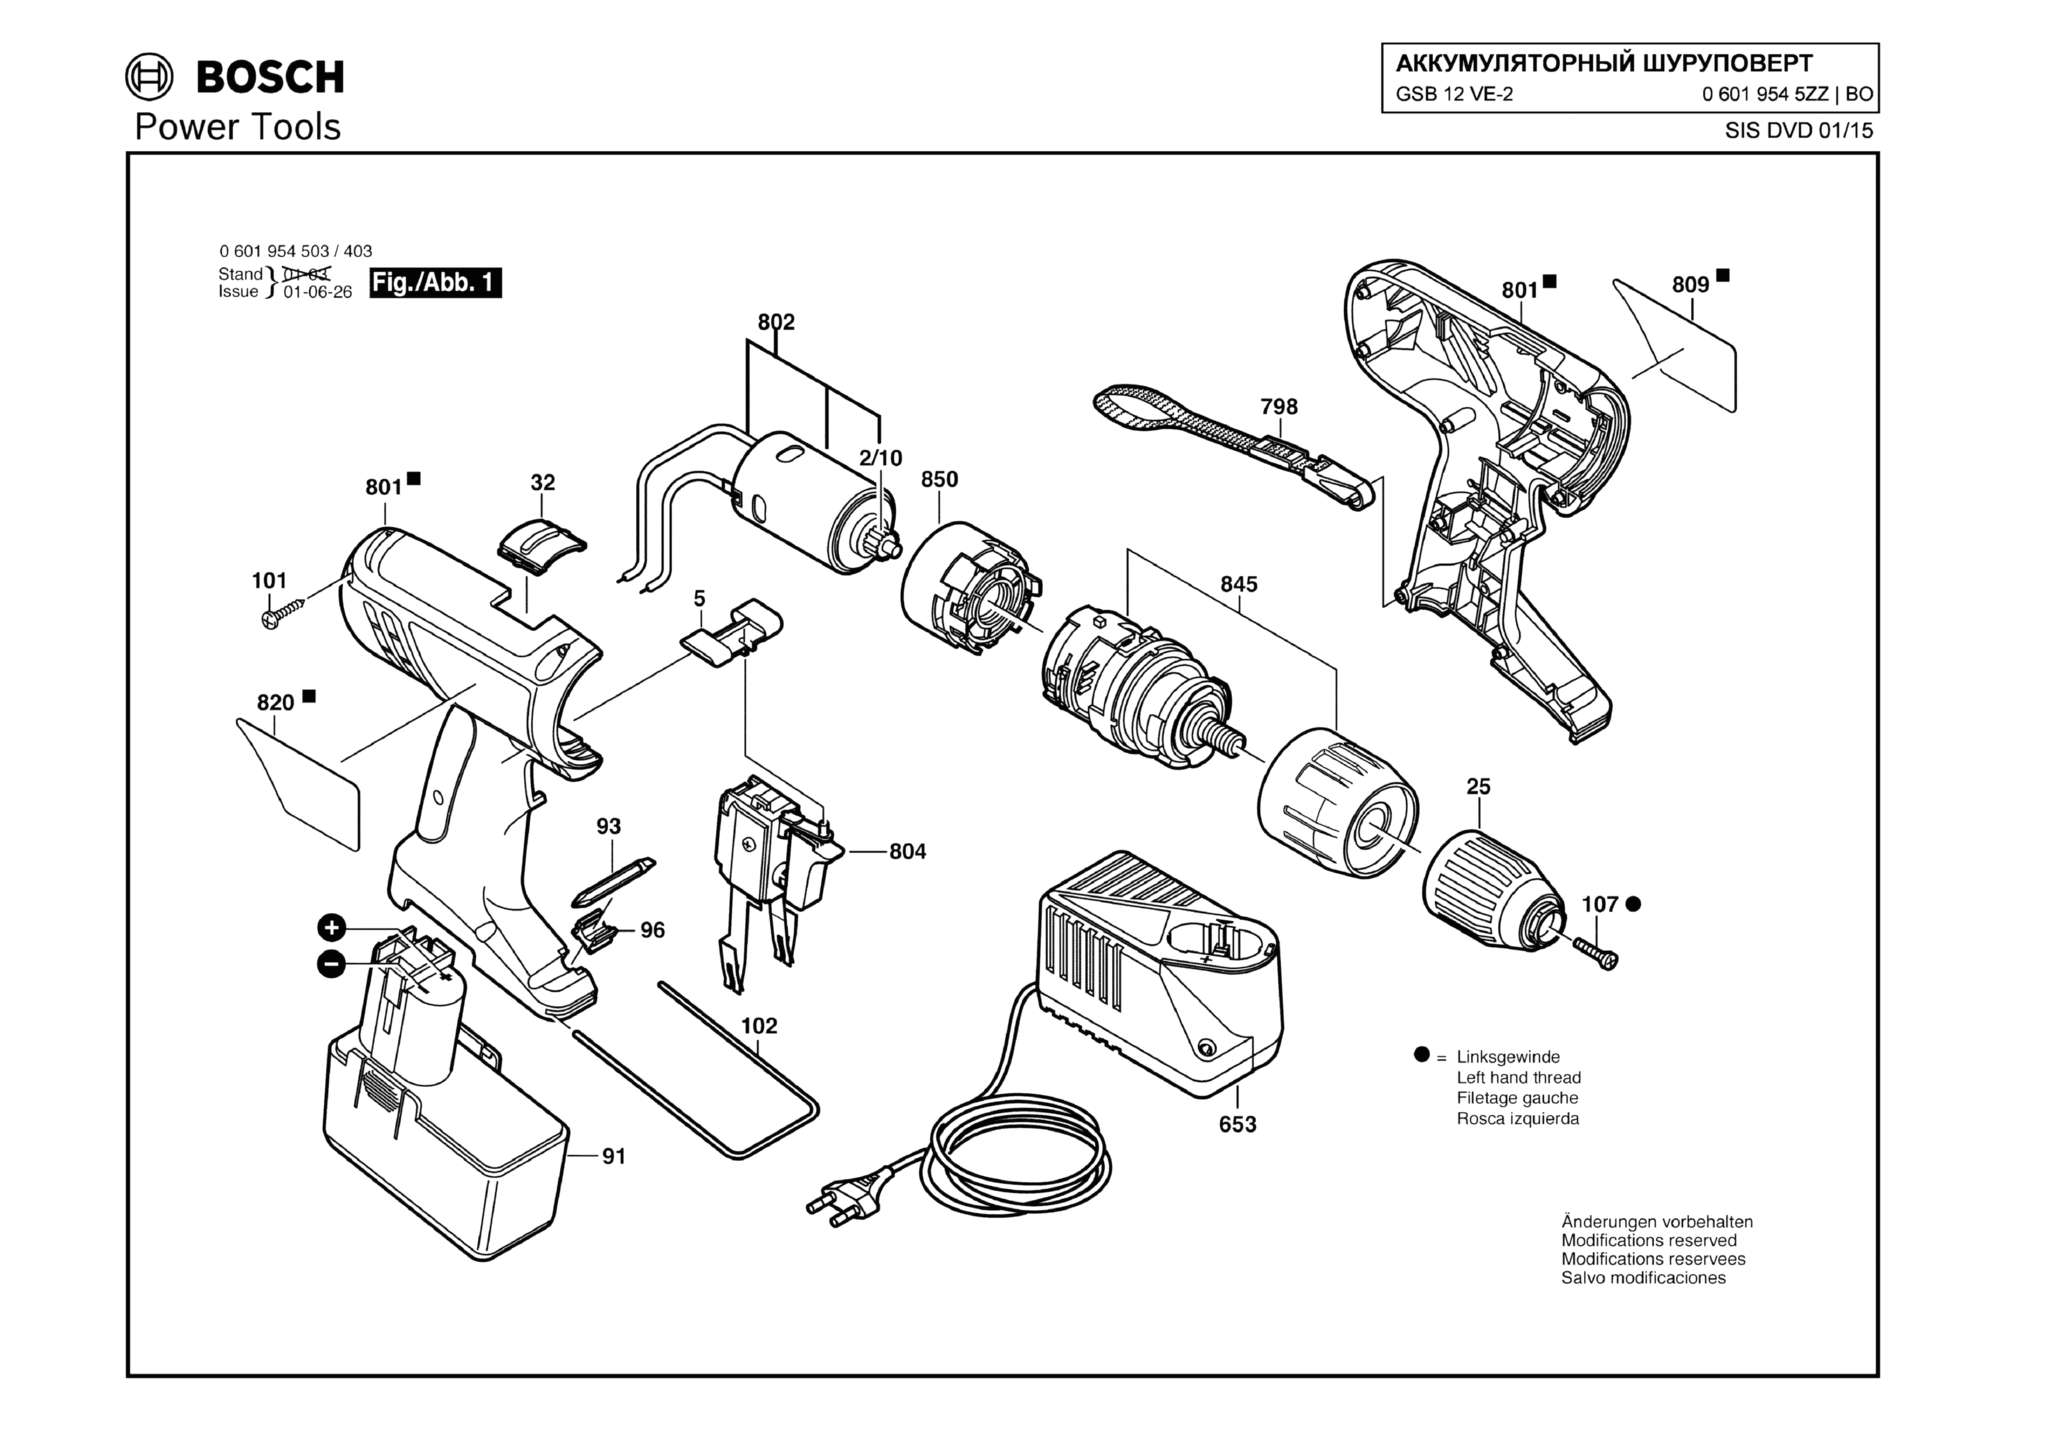 Запчасти, схема и деталировка Bosch GSB 12 VE-2 (ТИП 06019545ZZ)